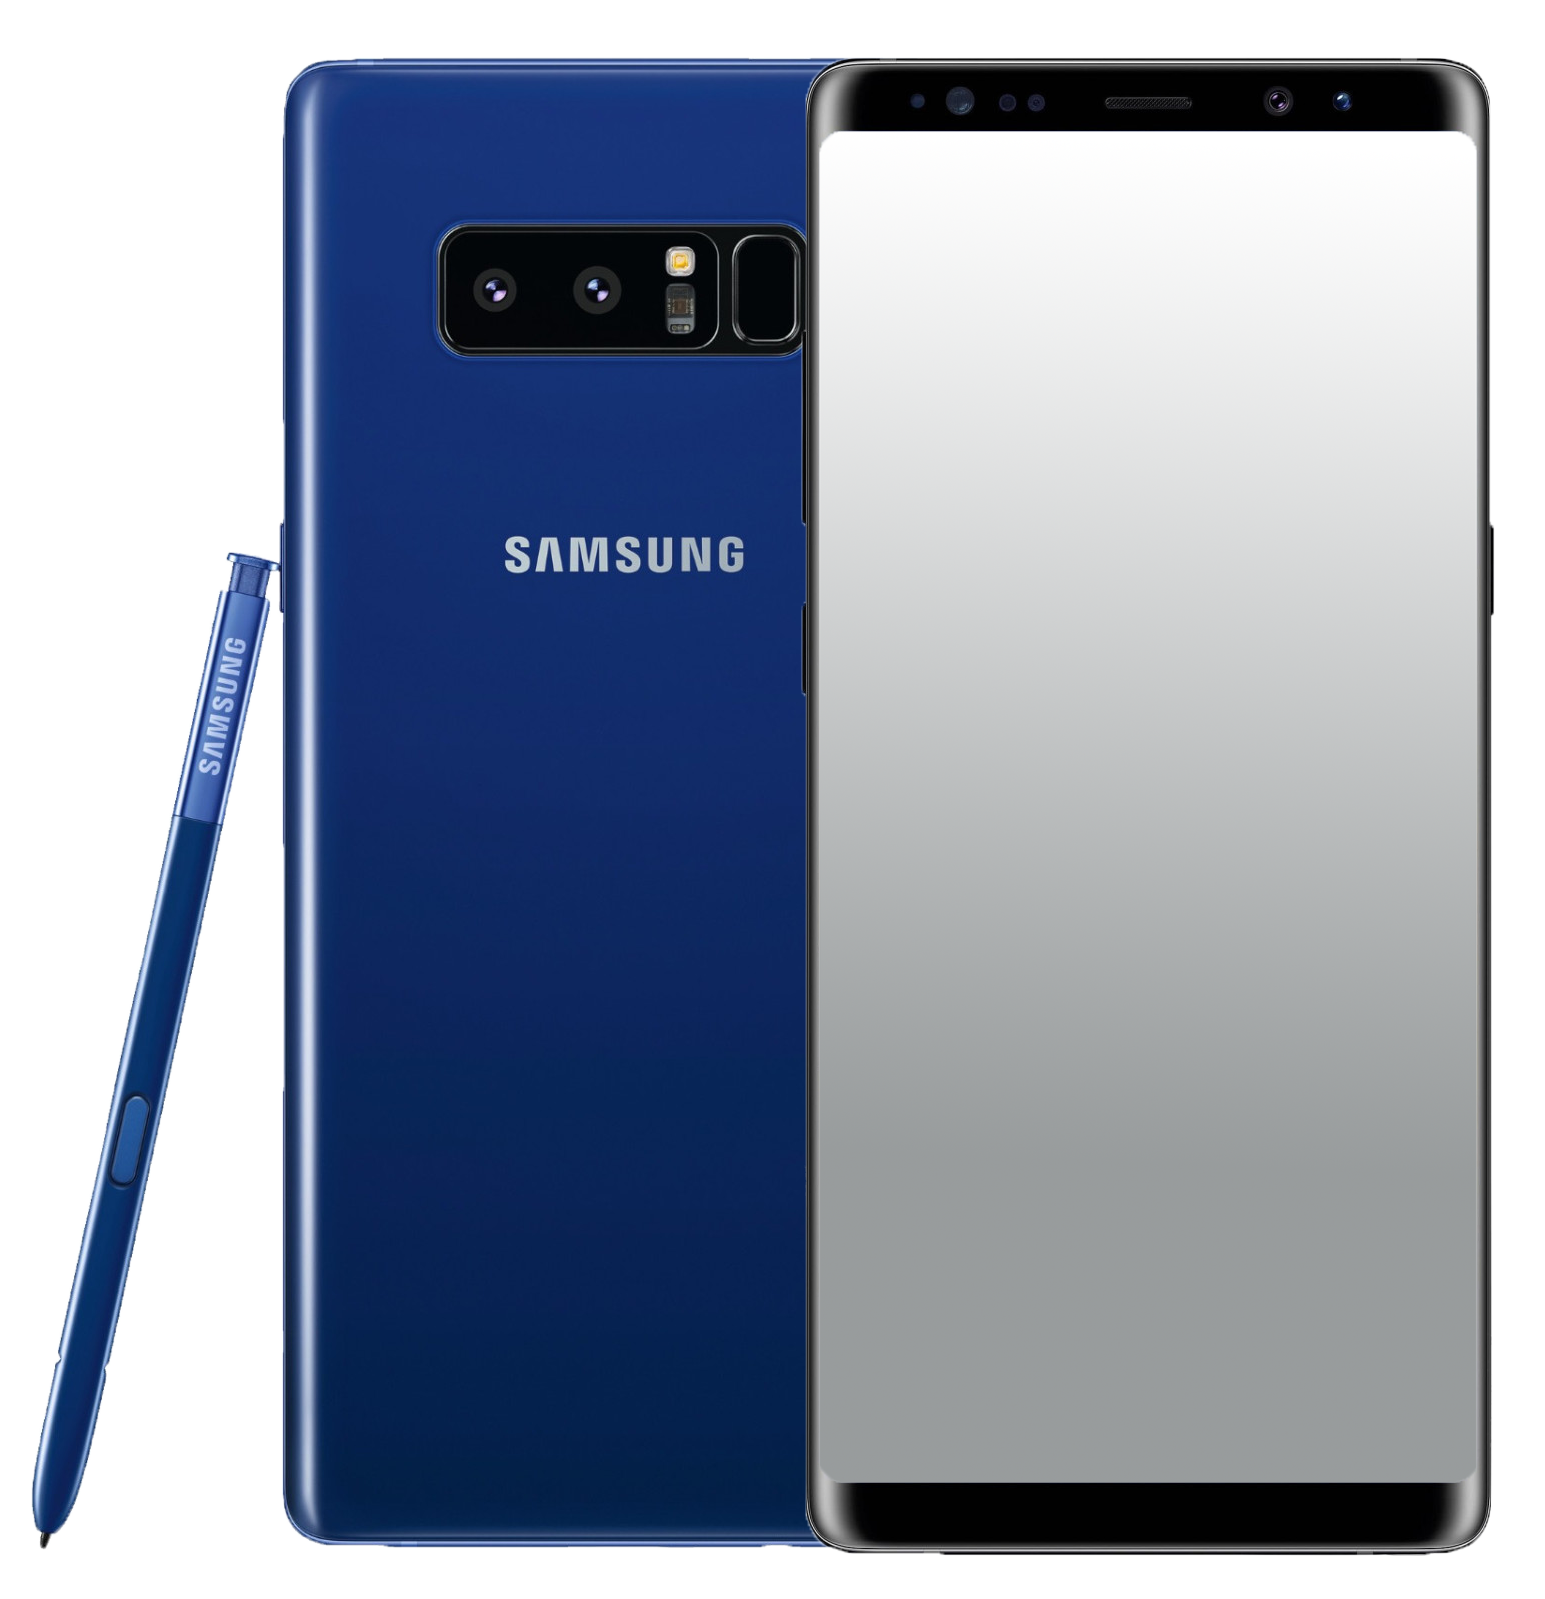 Samsung Galaxy Note 8 Dual-SIM blau - Ohne Vertrag